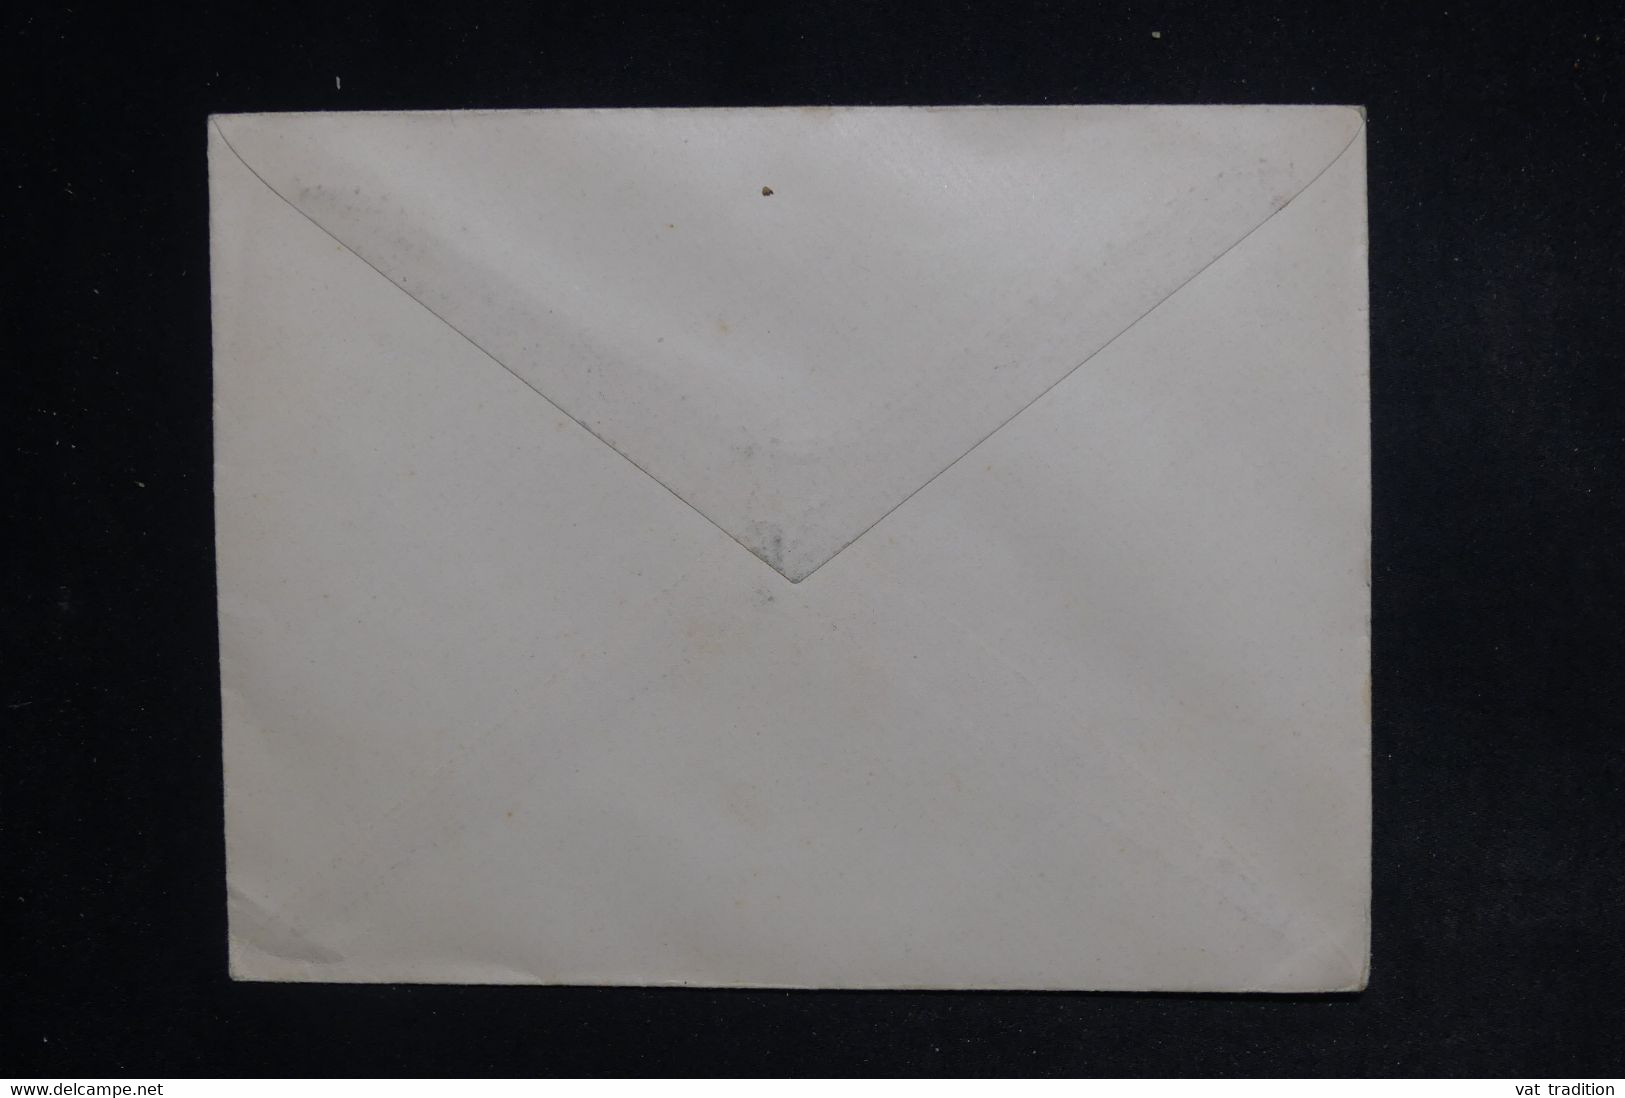 GRECE - 3 Taxes De 1902 Sur Enveloppe - L 122754 - Covers & Documents